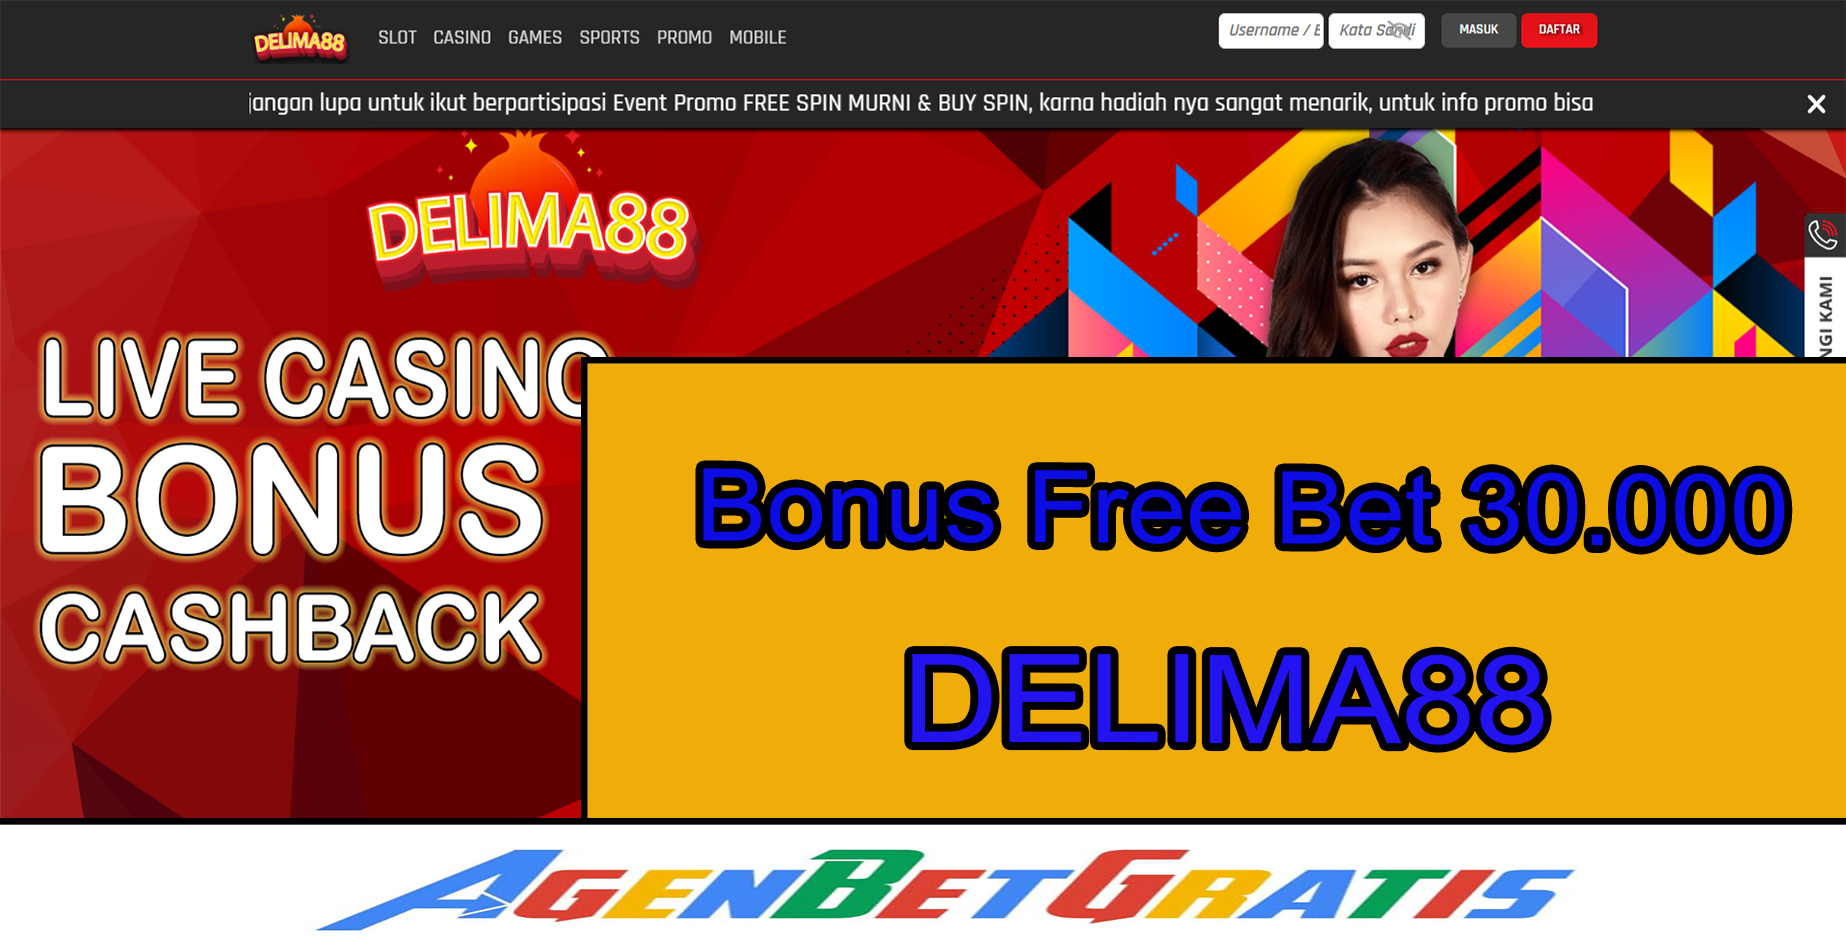 DELIMA88 - Bonus FreeBet 30.000